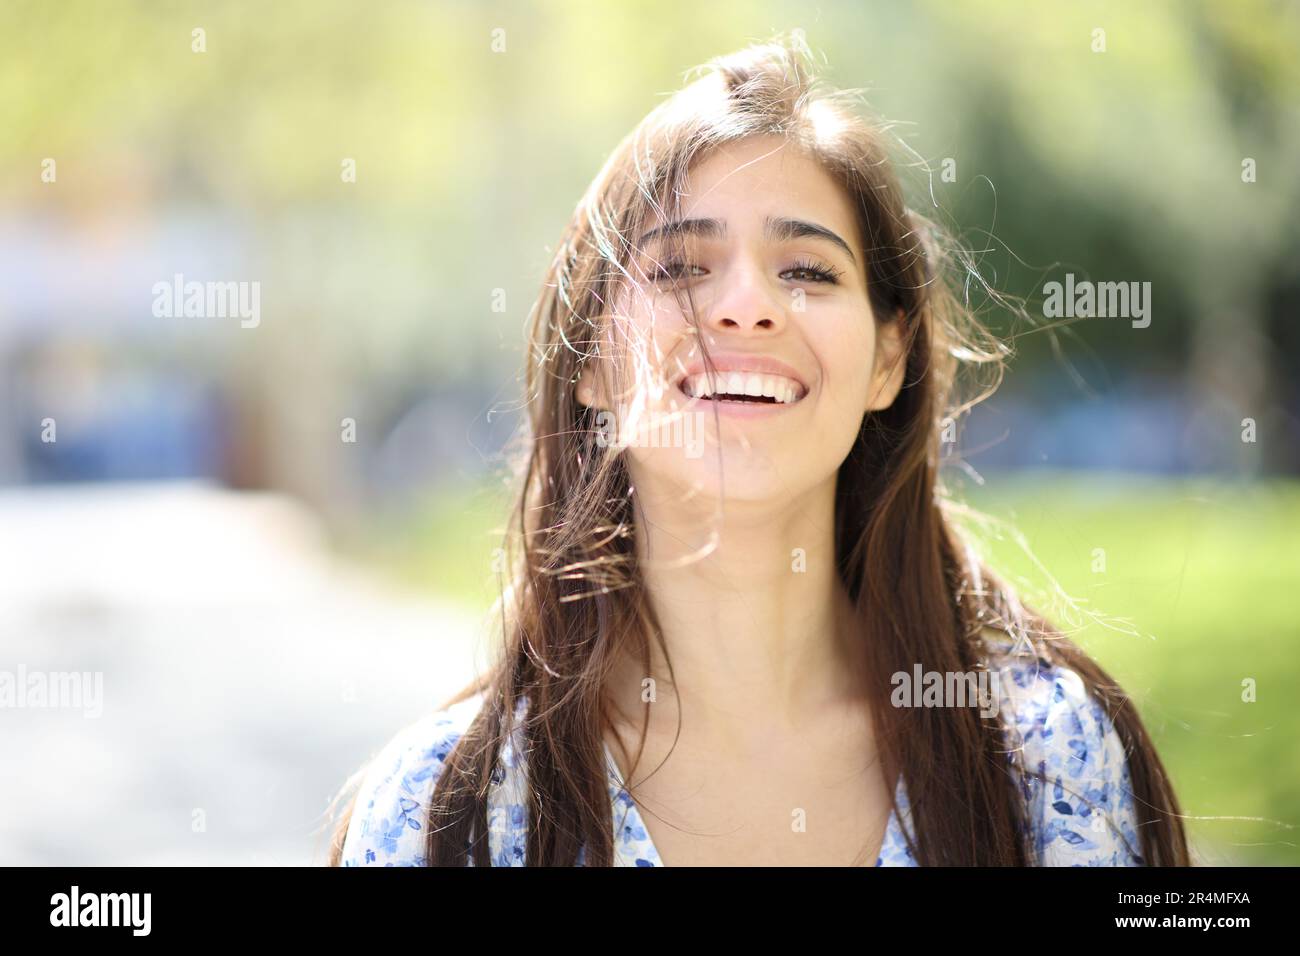 Vue de face portrait d'une femme heureuse qui rit avec des cheveux bouchés un jour venteux Banque D'Images